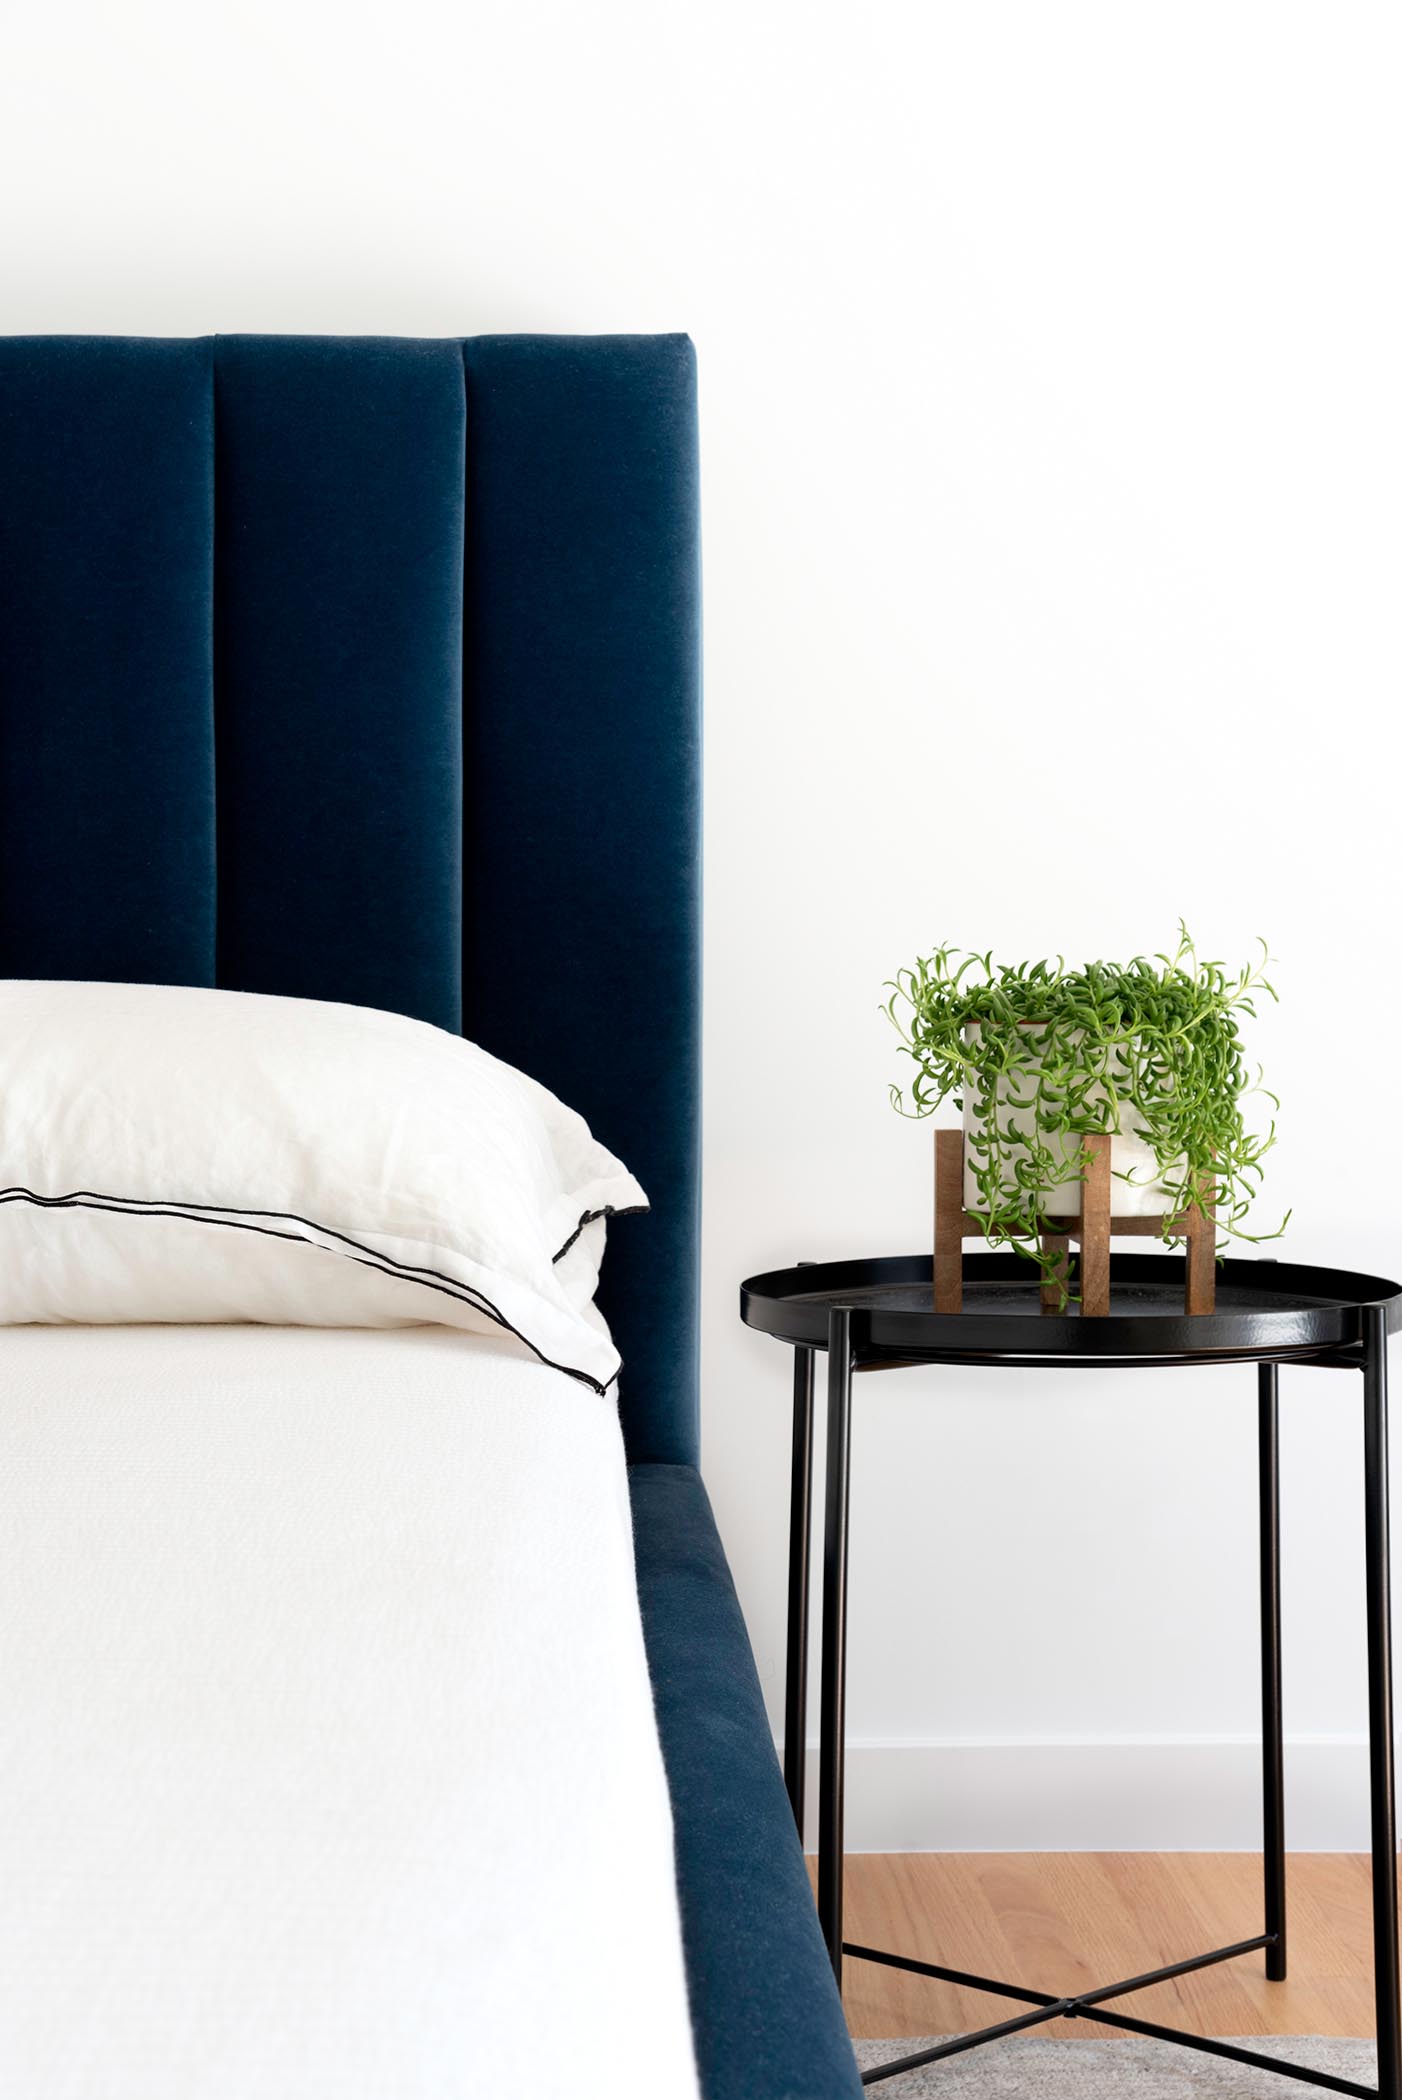 Спальня с глубоким королевским синим бархатным изголовьем и каркасом кровати, а также матовым черным прикроватным столиком с небольшим растением.